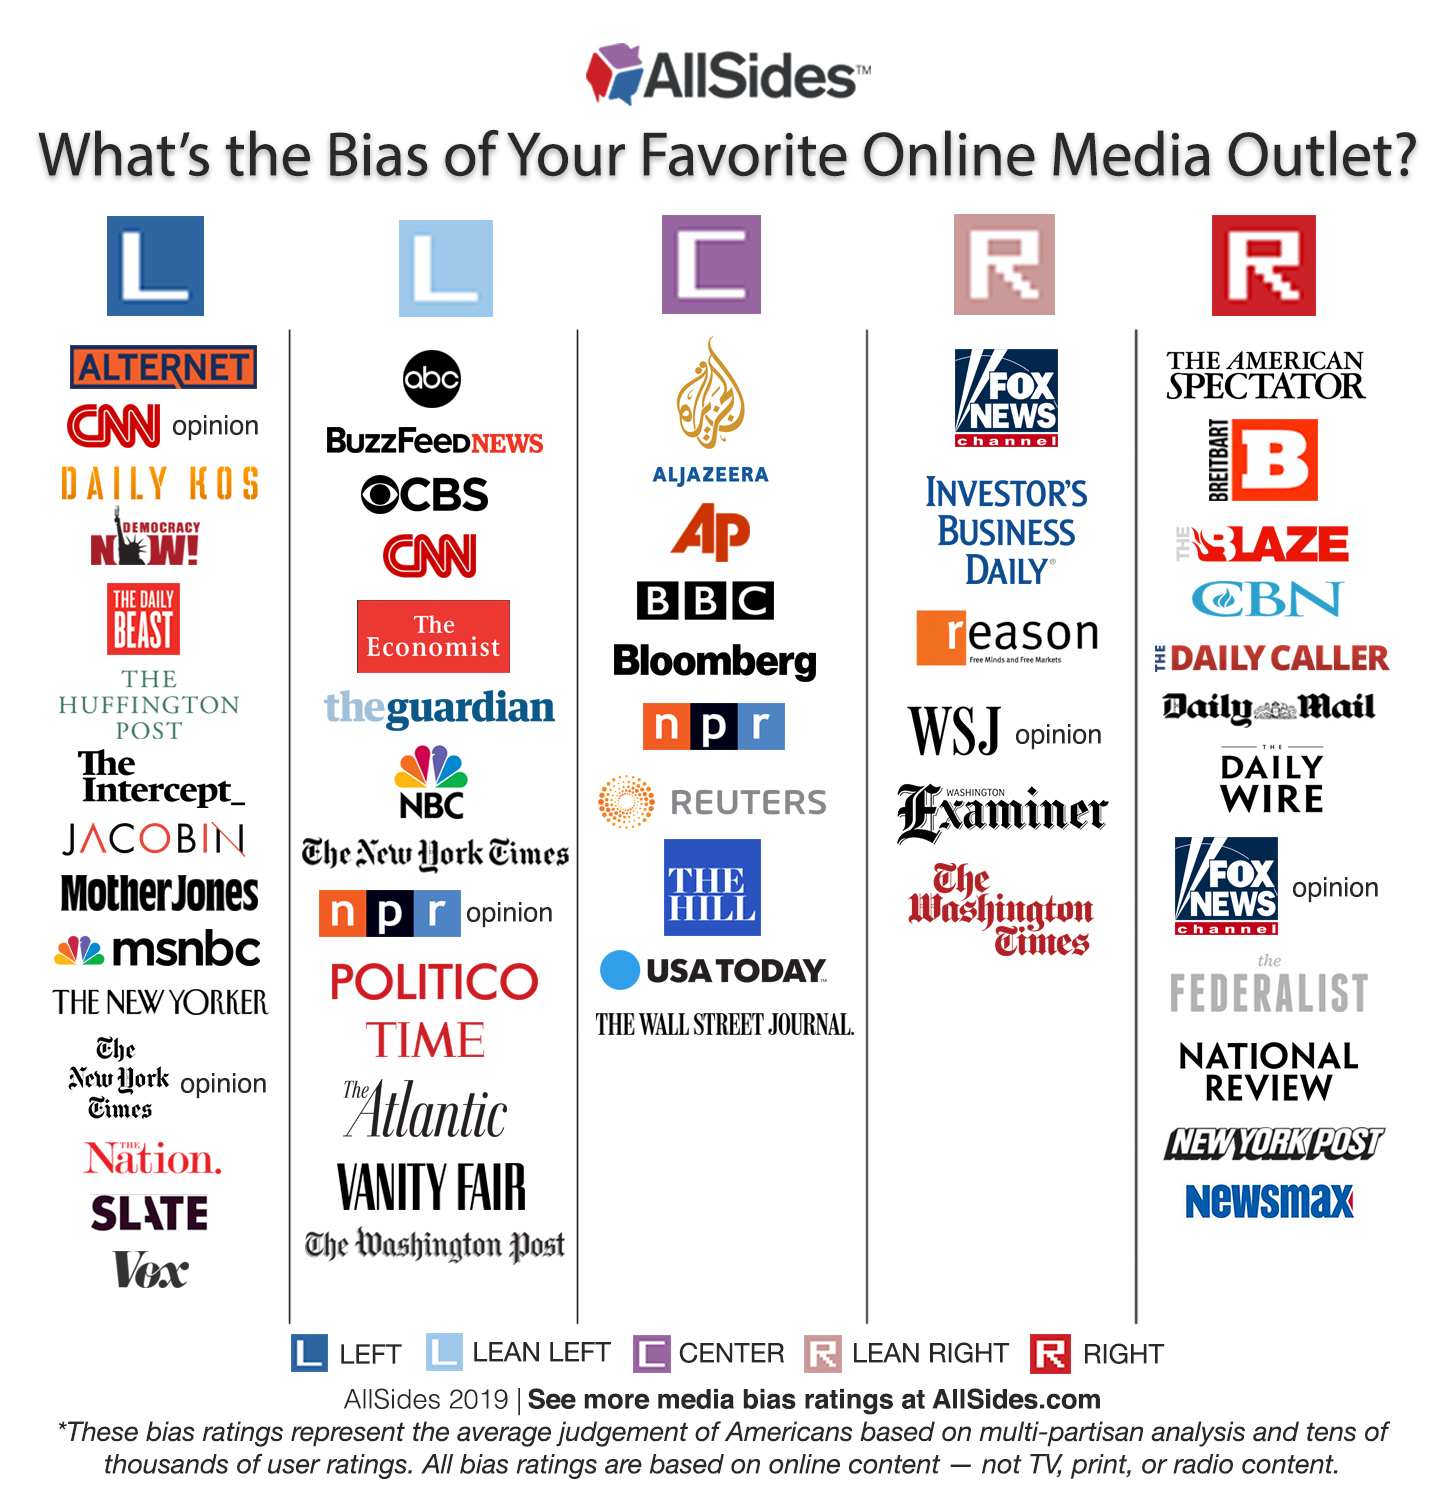 Media News Bias Chart